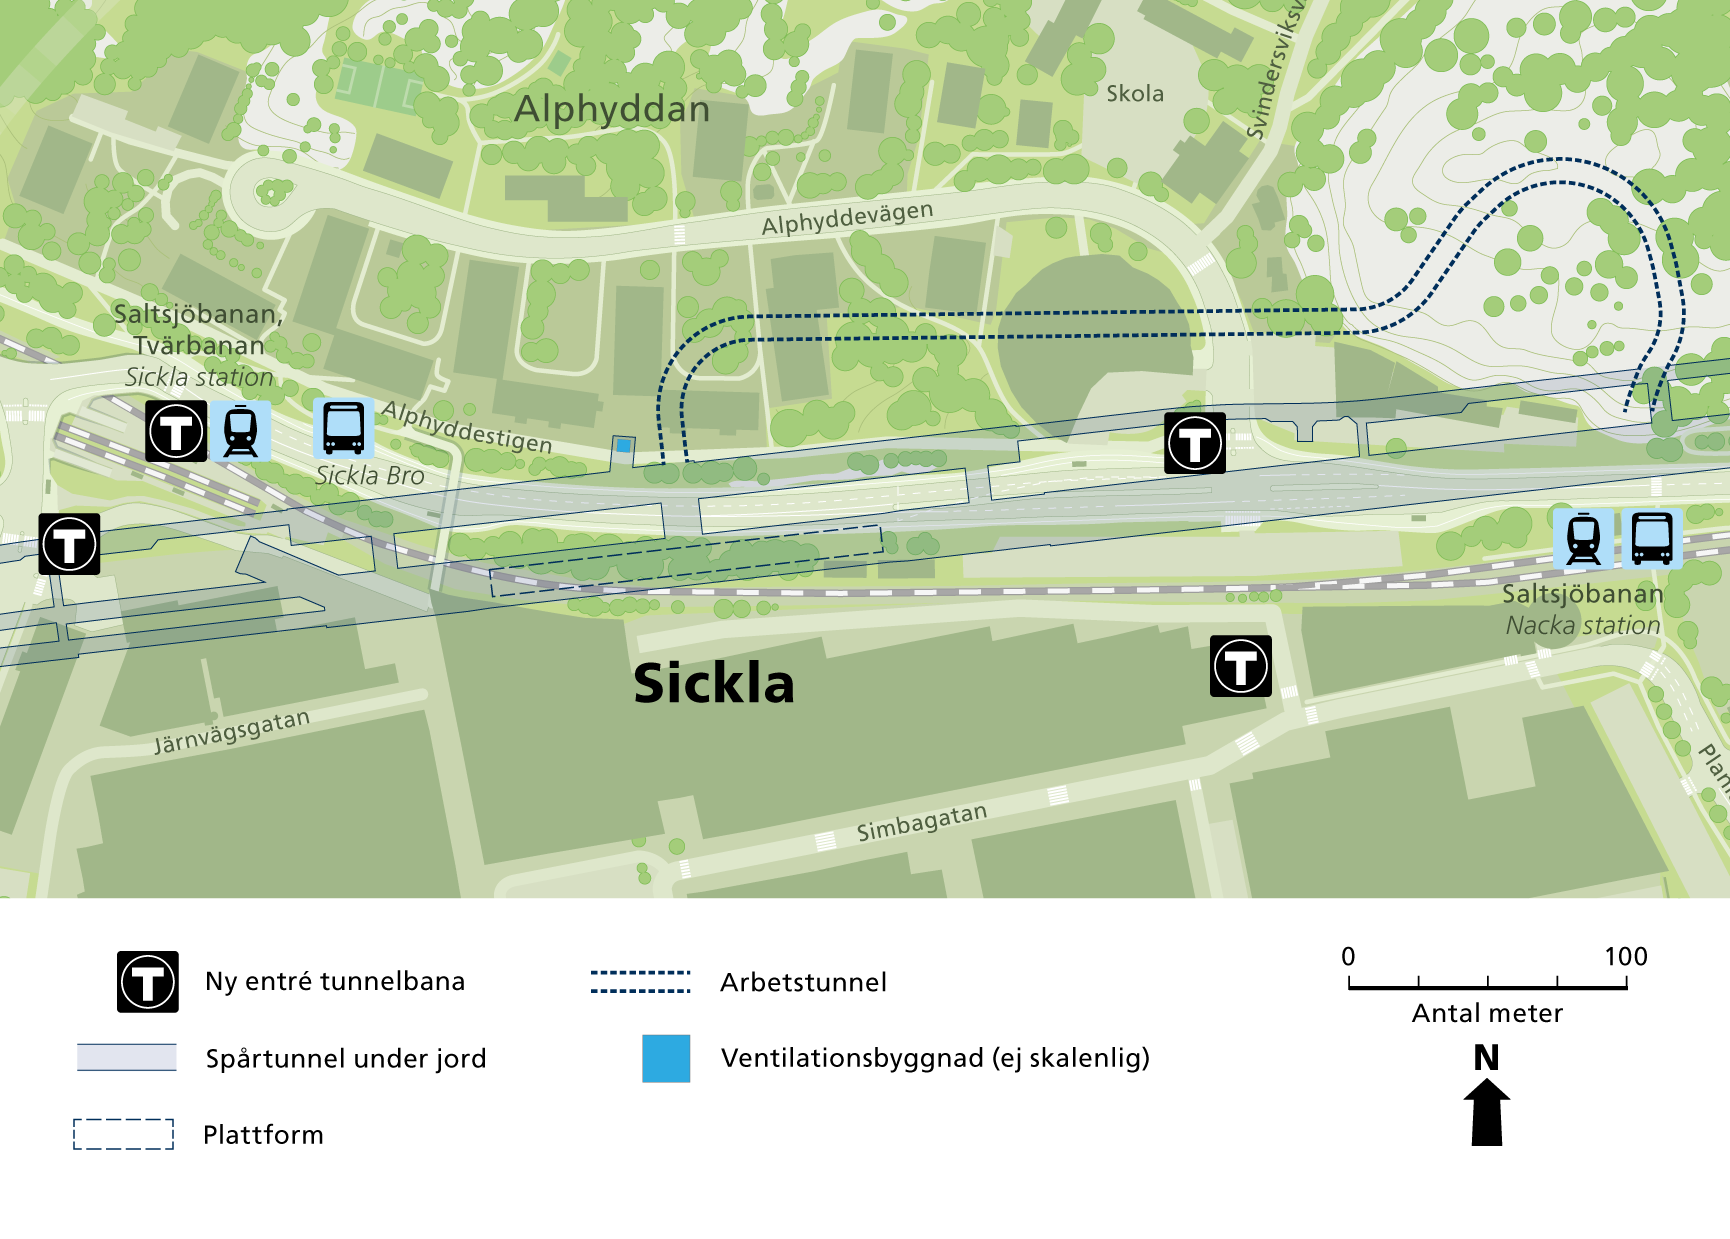 Karta som visar var tunnelbanans olika anläggningsdelar i Sickla byggs.